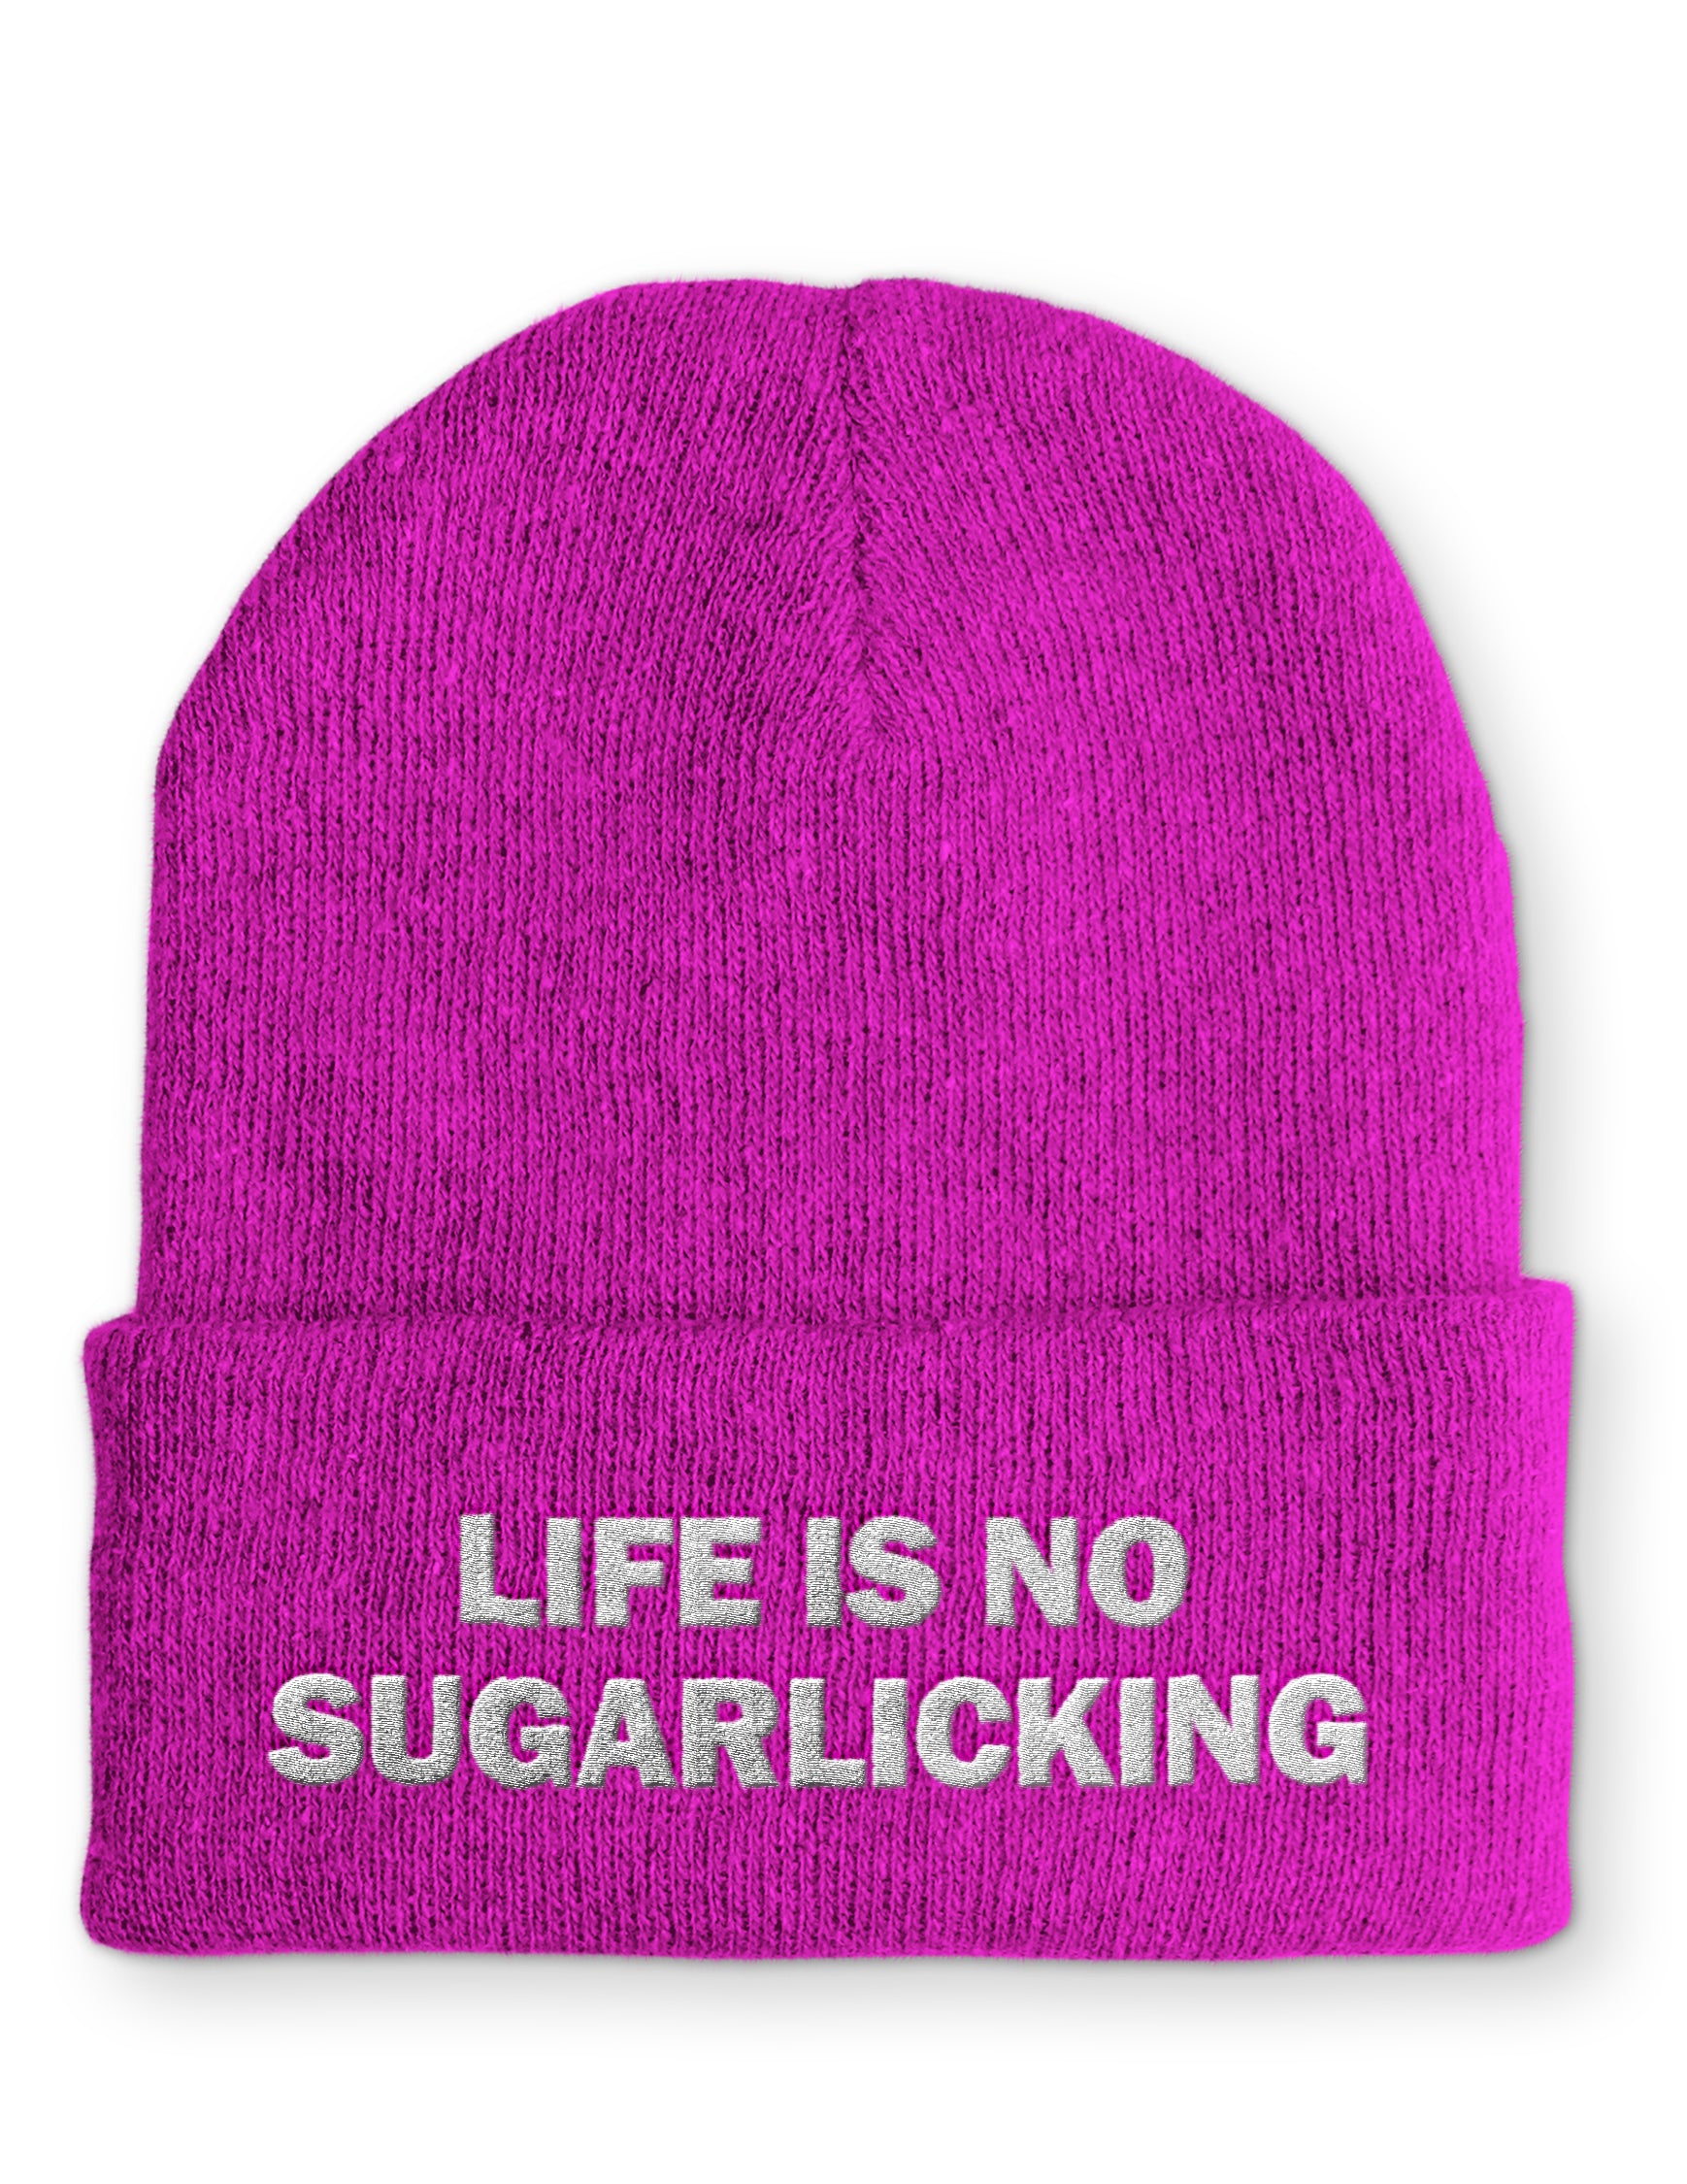 Mütze Life is no Sugarlicking